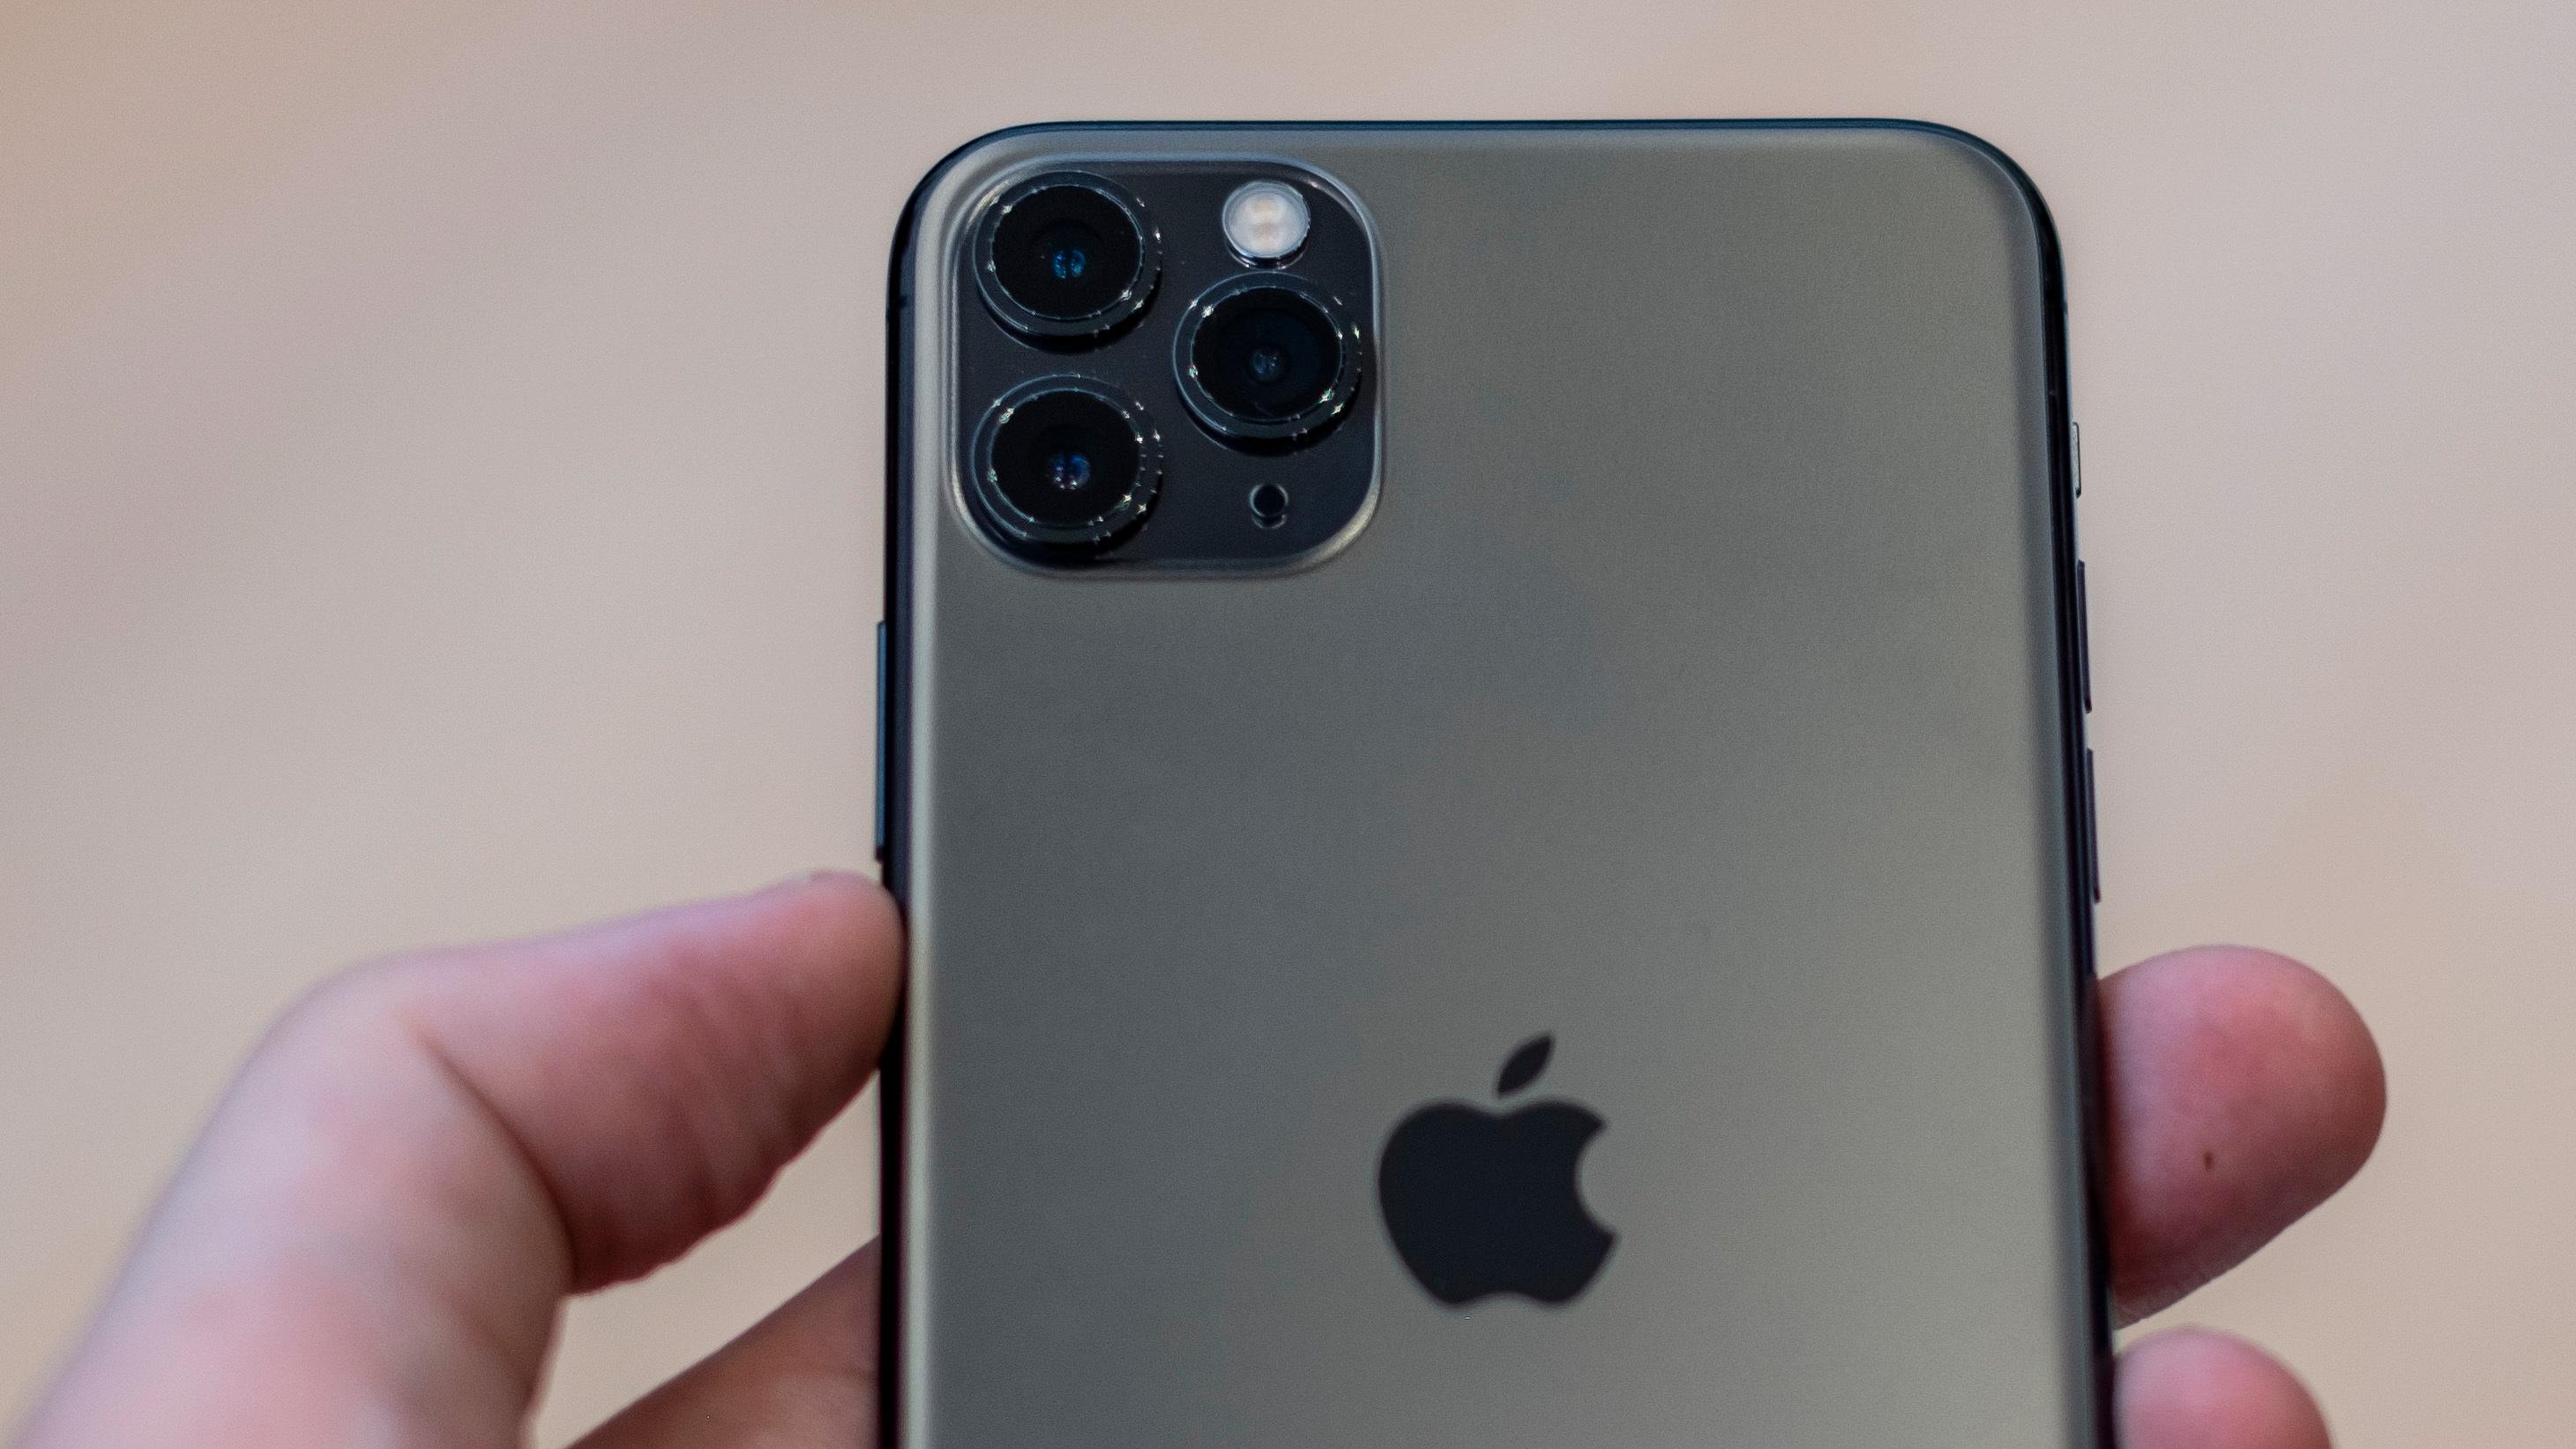 iPhone 11 Pro-modellene har tre kamera, og du kan zoome trinnløst fra ultravidvinkel via vidvinkel til 2x zoom. Det gir langt bedre video enn hos de fleste av konkurrentene med flere kamera på baksiden.